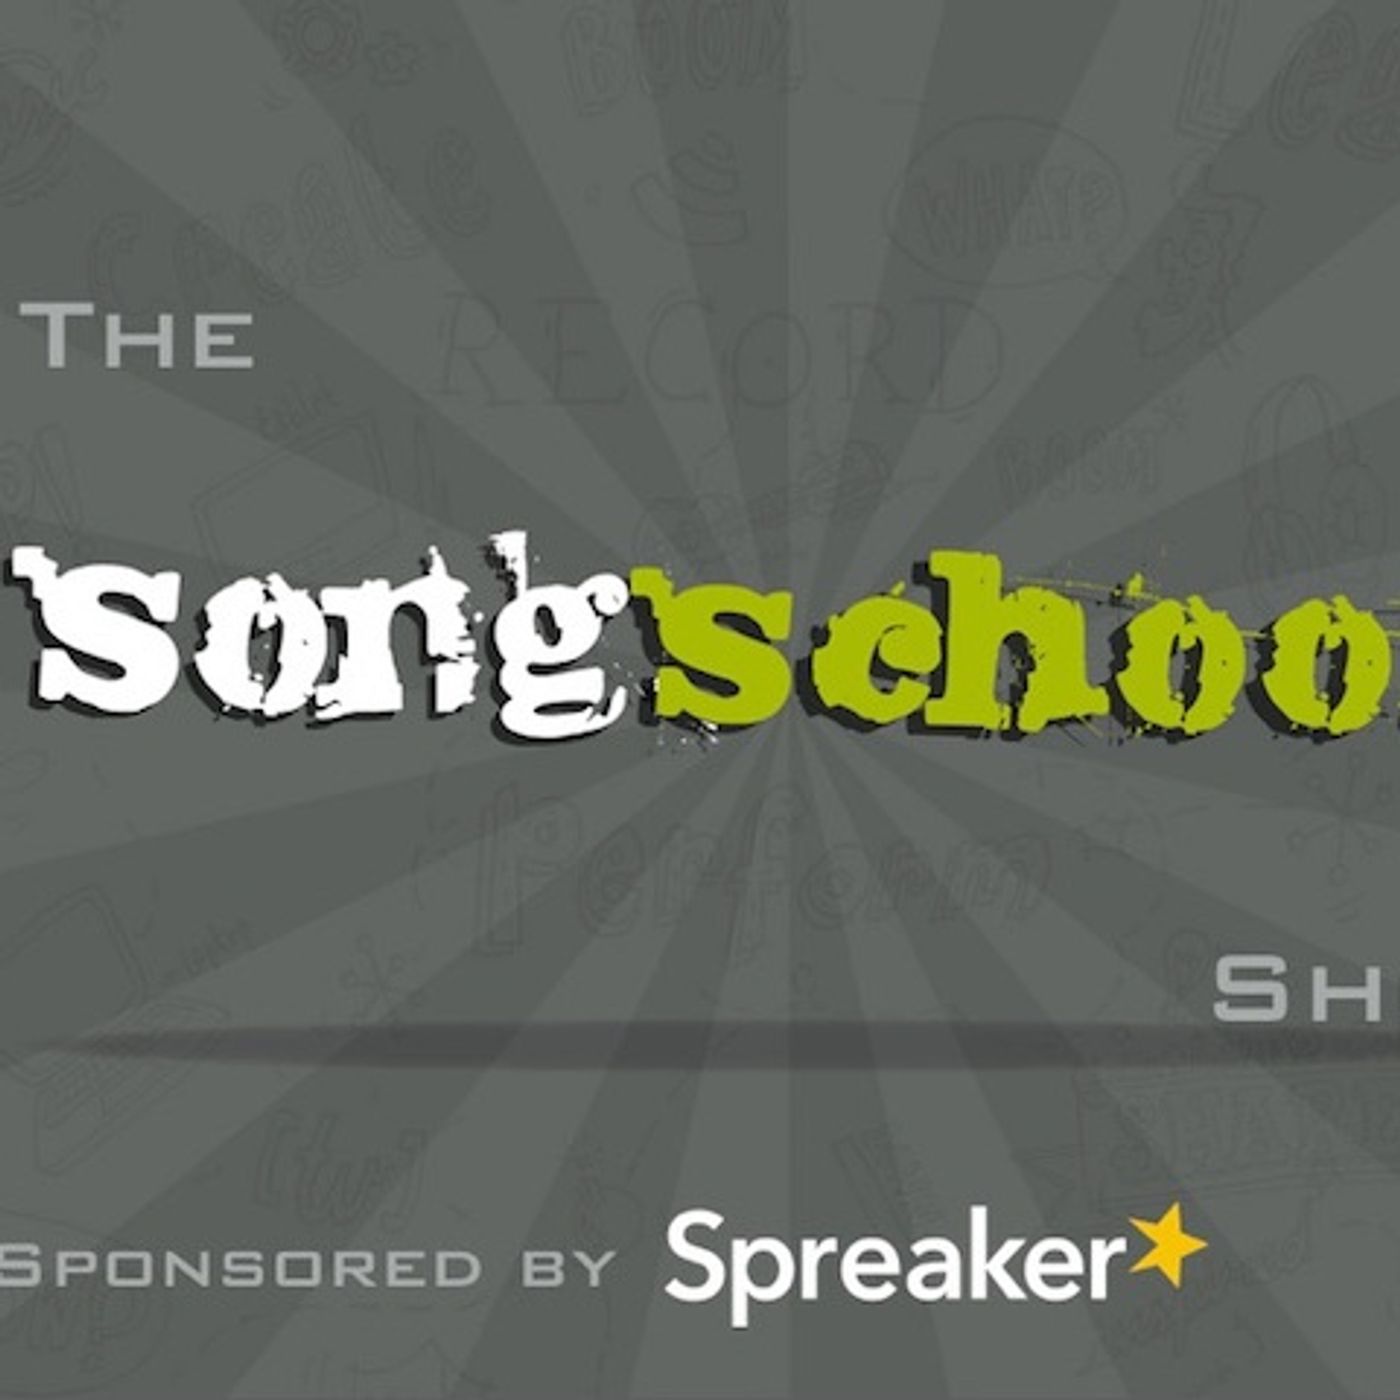 The Songschool Show @ Colaiste Iosagain (2:3)